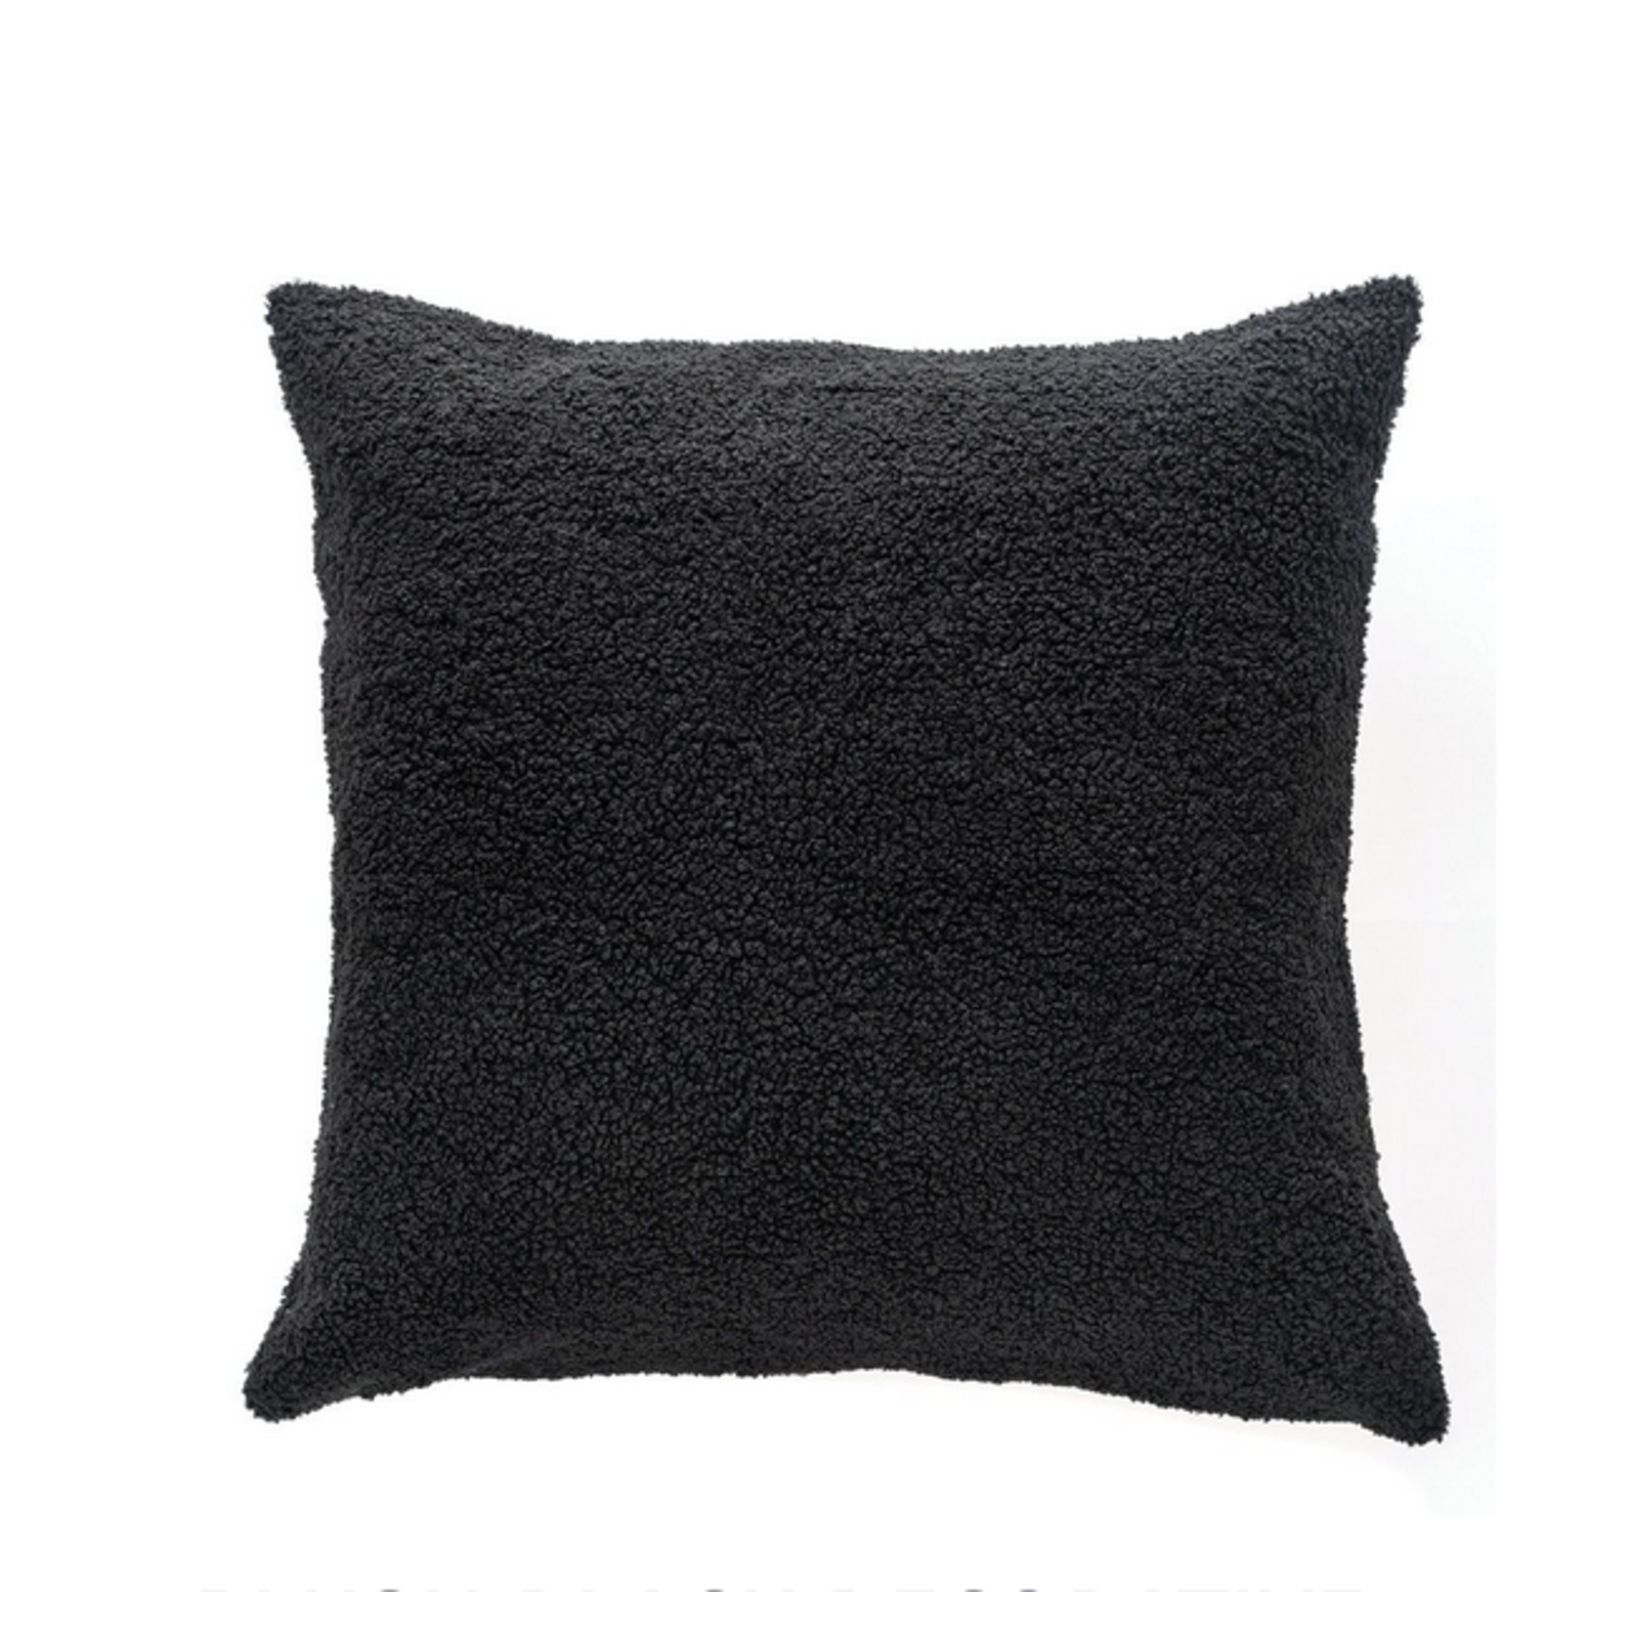 Plush Black Cushion 20 x 20